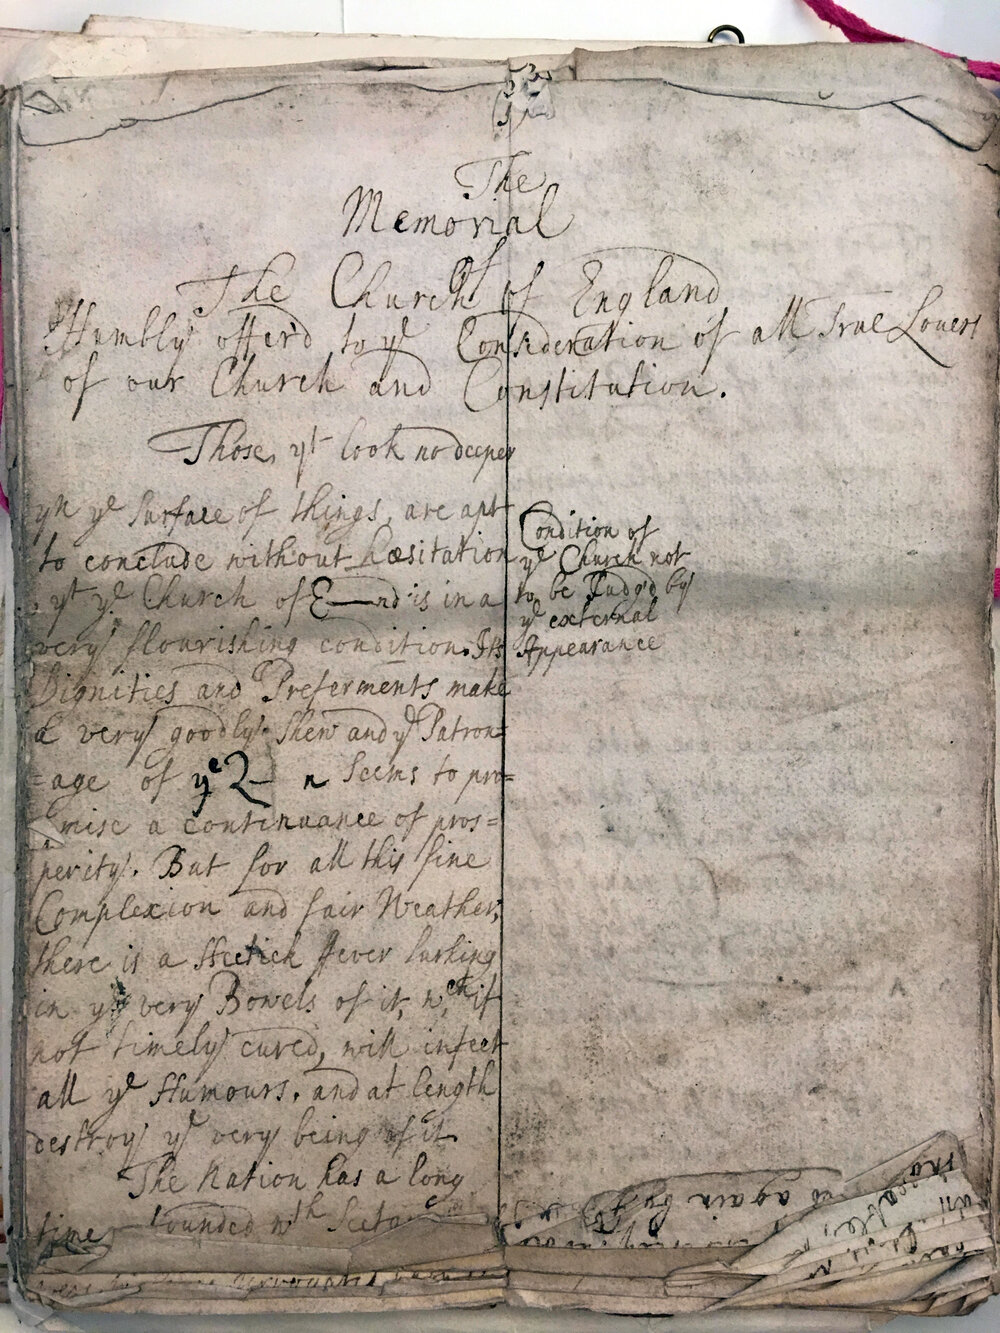 Manuscript copy of "The Memorial"